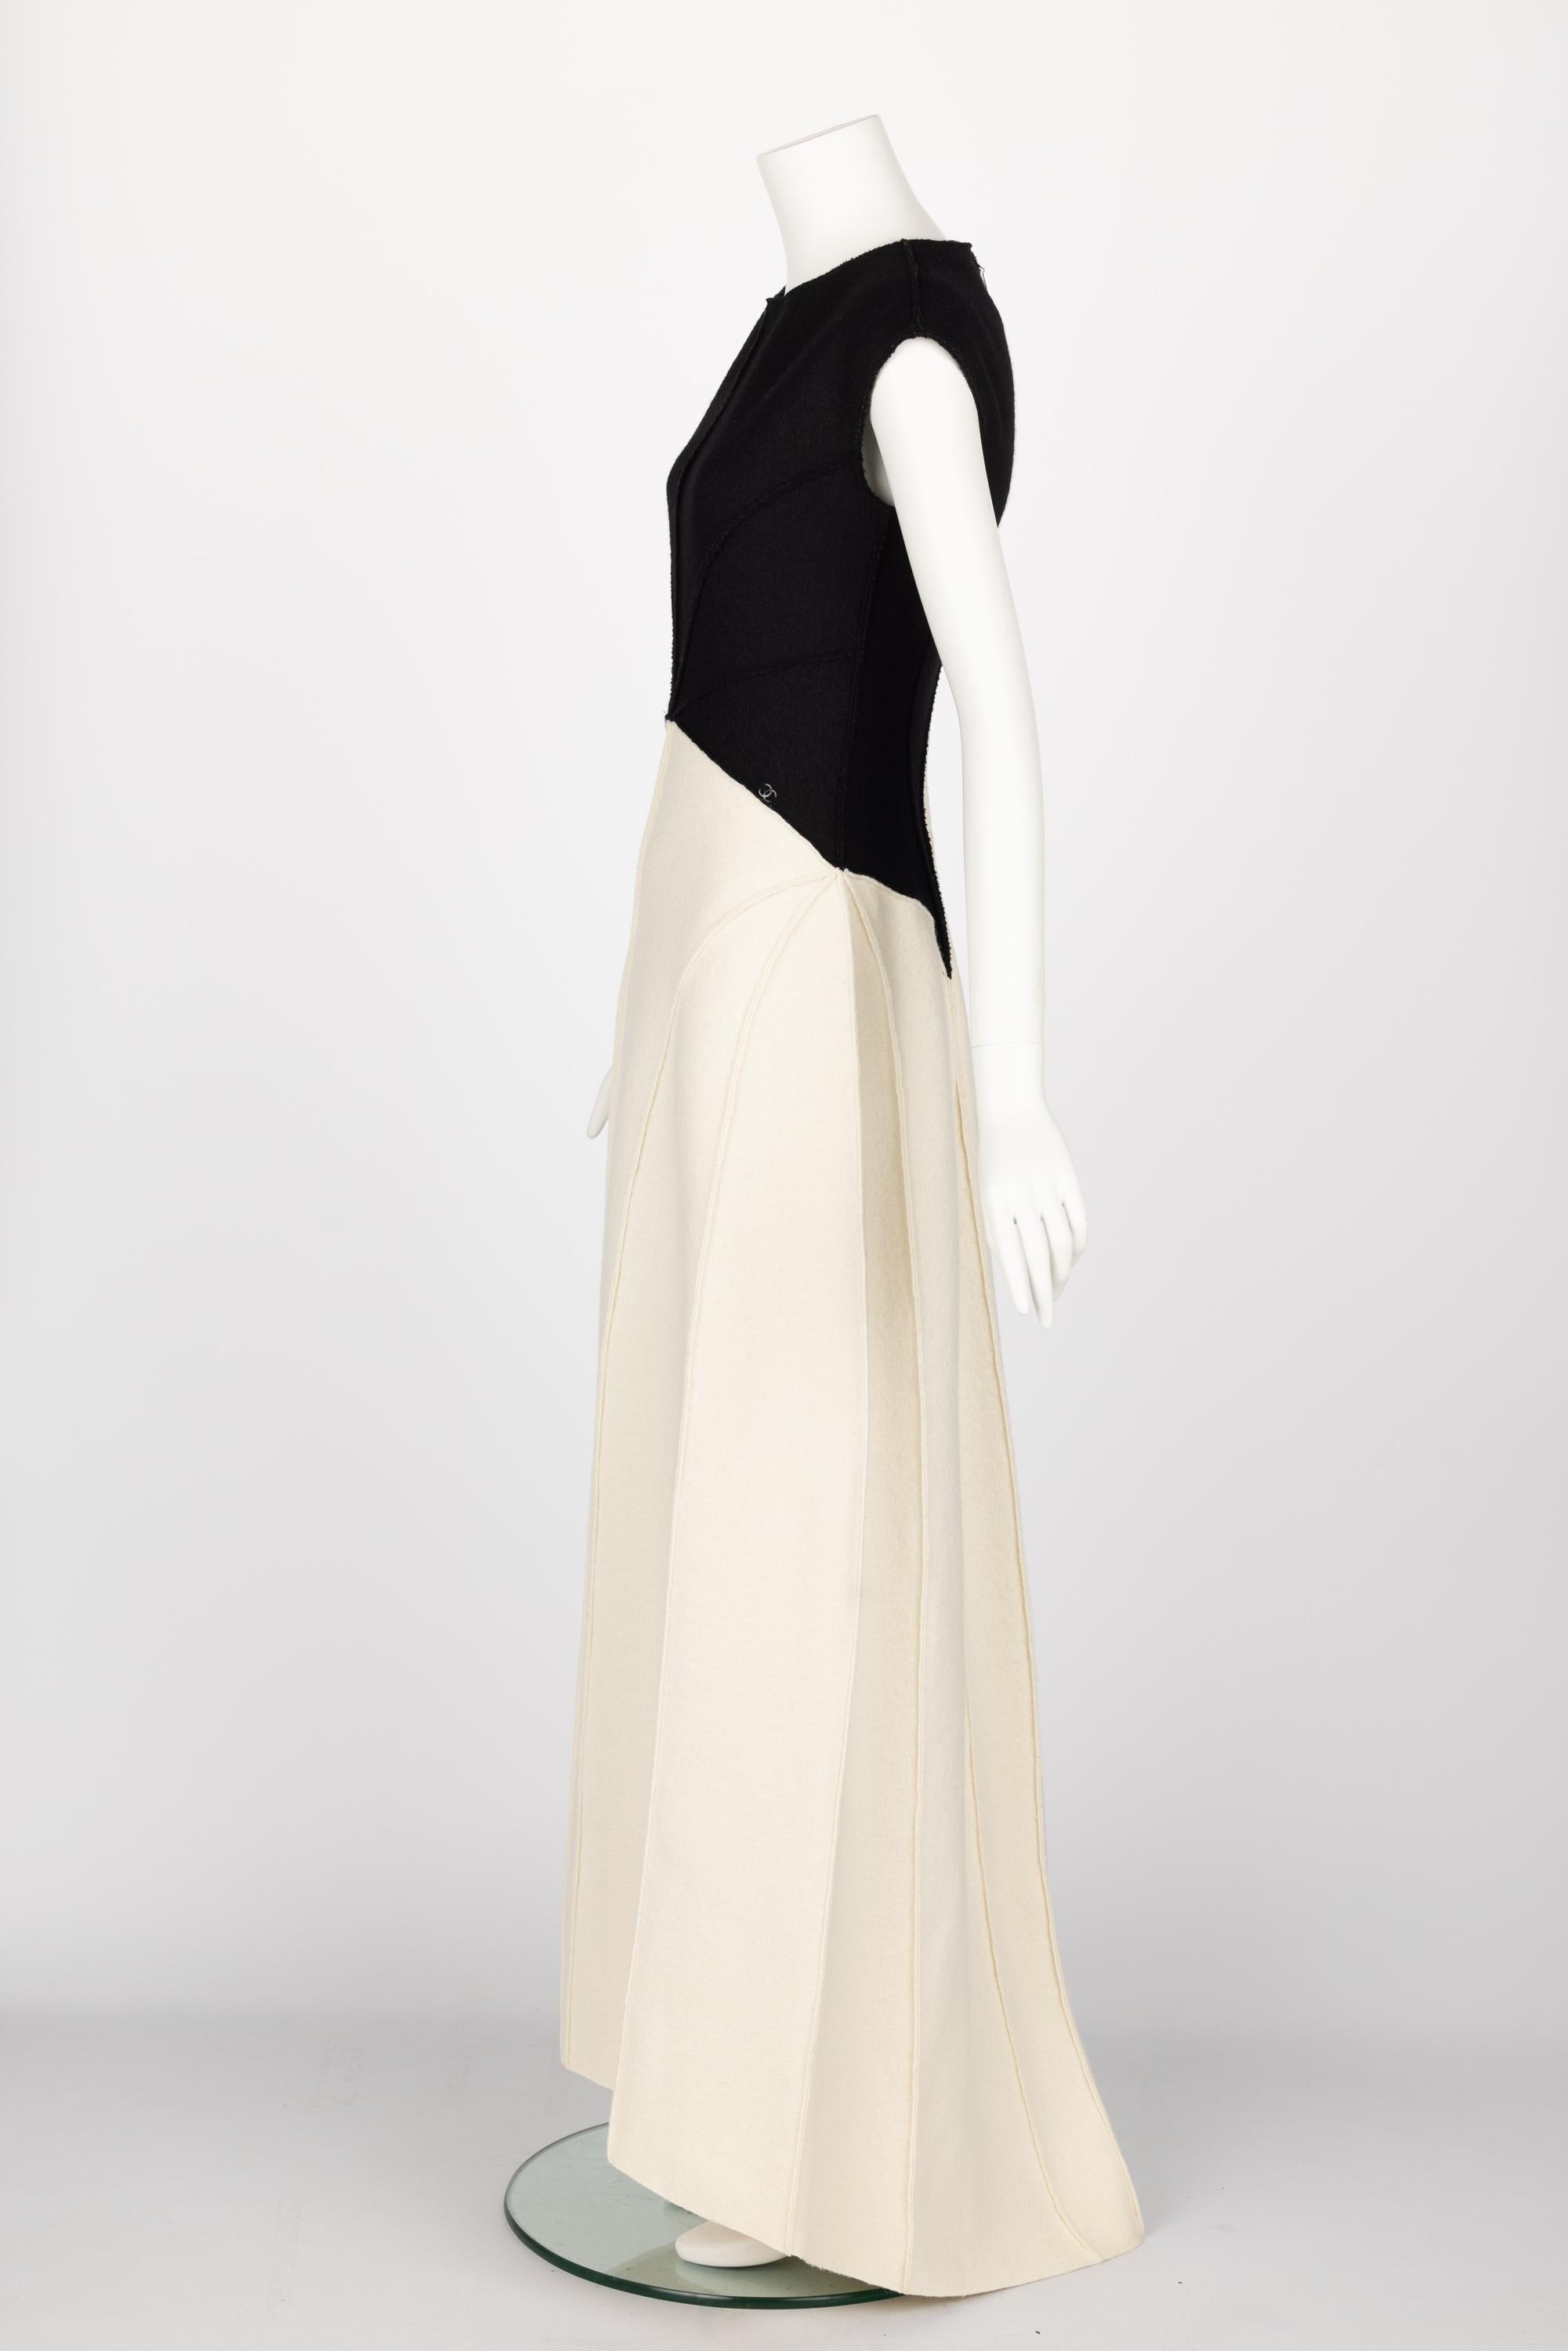 Women's Chanel Karl Lagerfeld Fall 1999 Black & White Sculptural Sunburst Gown